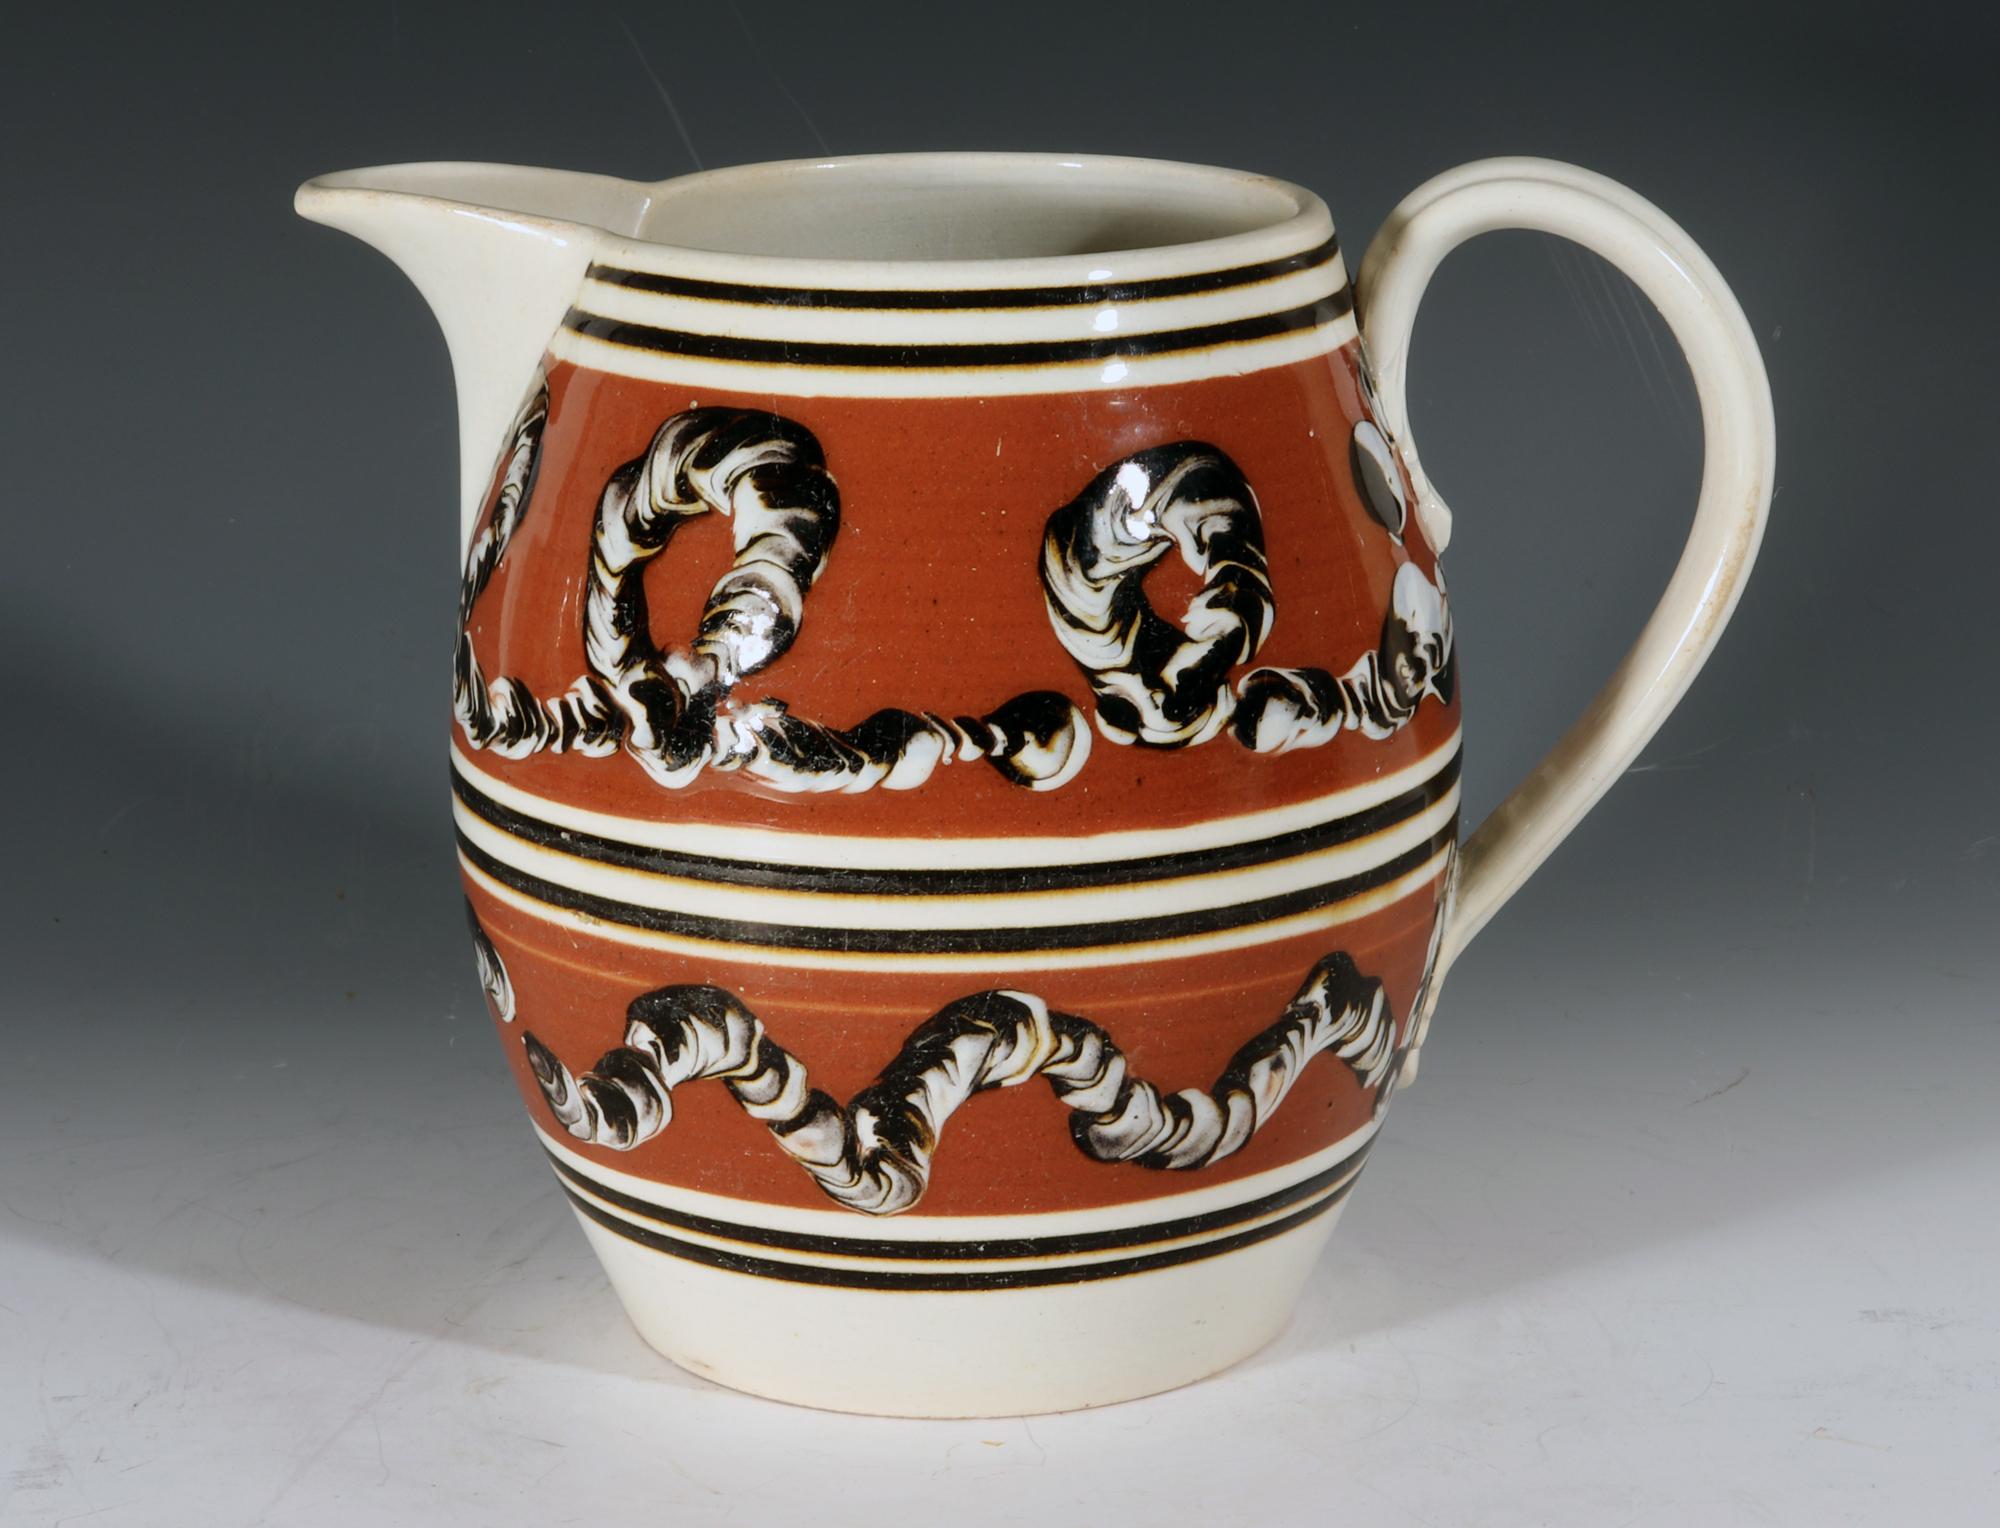 Mocha Pottery Earthworm Krug,
um 1820

Der mokkafarbene Tonkrug hat zwei breite ockerfarbene Bänder mit einem Regenwurm-Motiv. Der obere Teil mit einem Looping-Muster und der untere Teil mit einem Wellenmuster. Oben, unten und in der Mitte